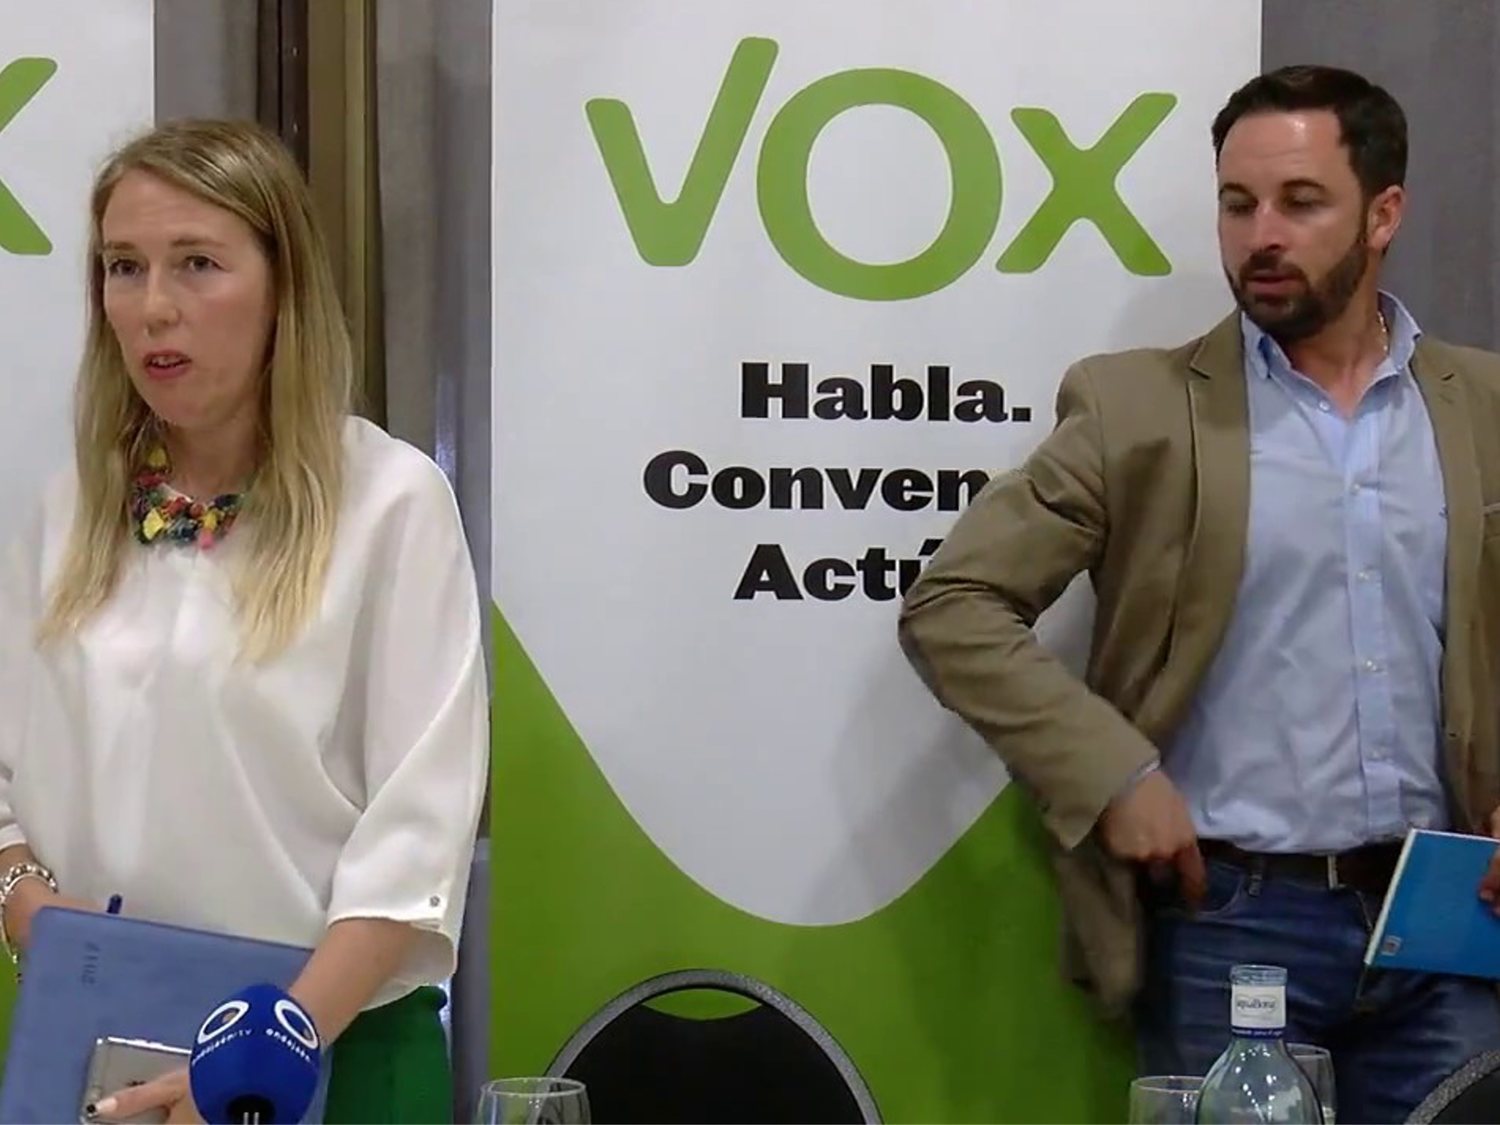 La candidata electa de VOX a la Alcaldía de Jaén fue detenida por robar 700 euros en un supermercado